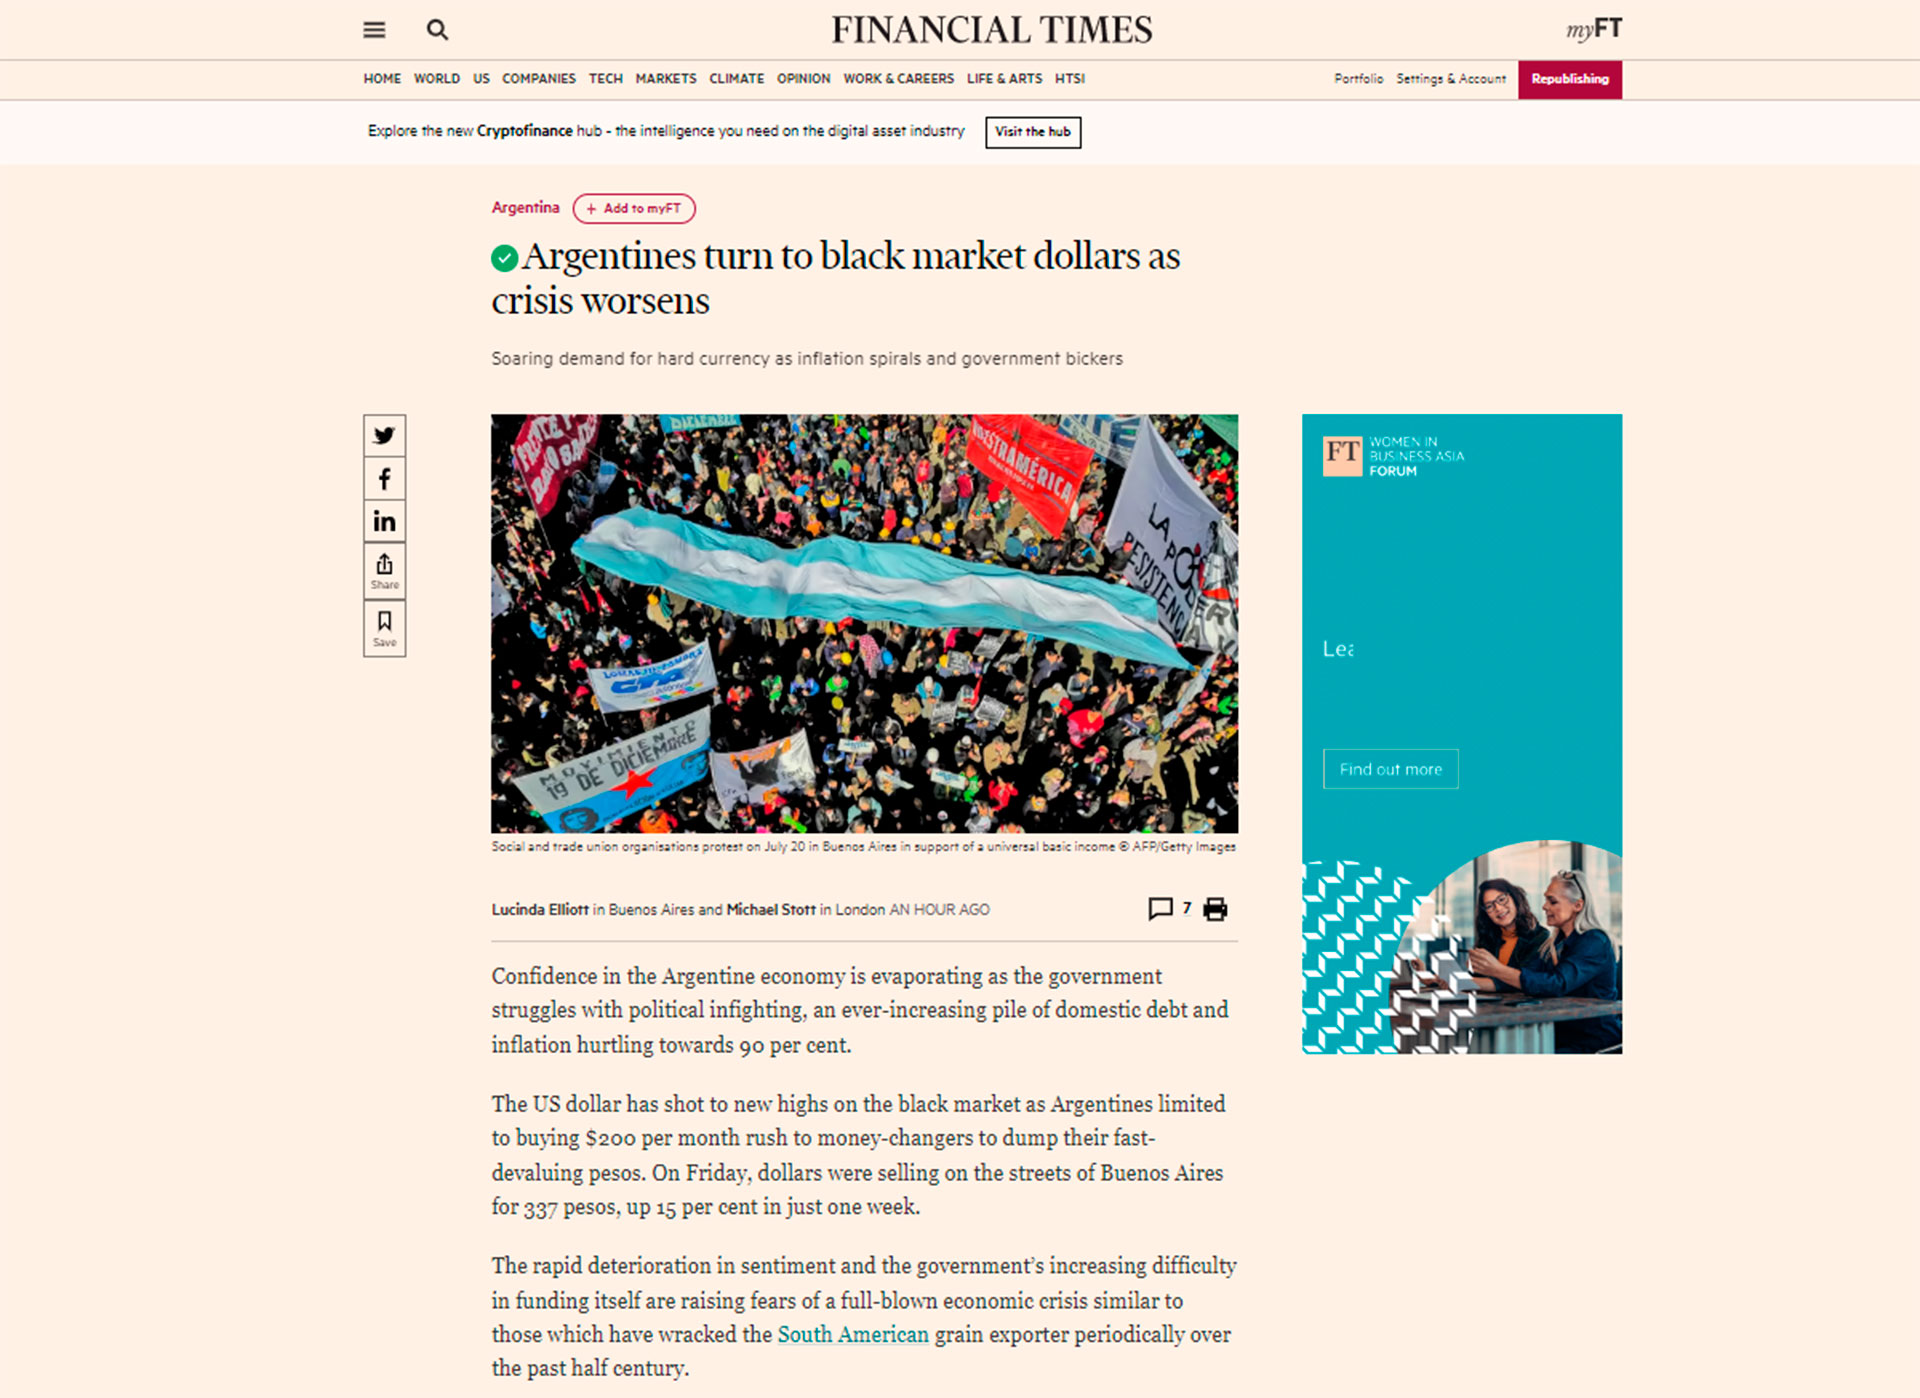 "Argentinos se vuelcan a dólares del mercado negro mientras la crisis empeora", la nota del Financial Times.